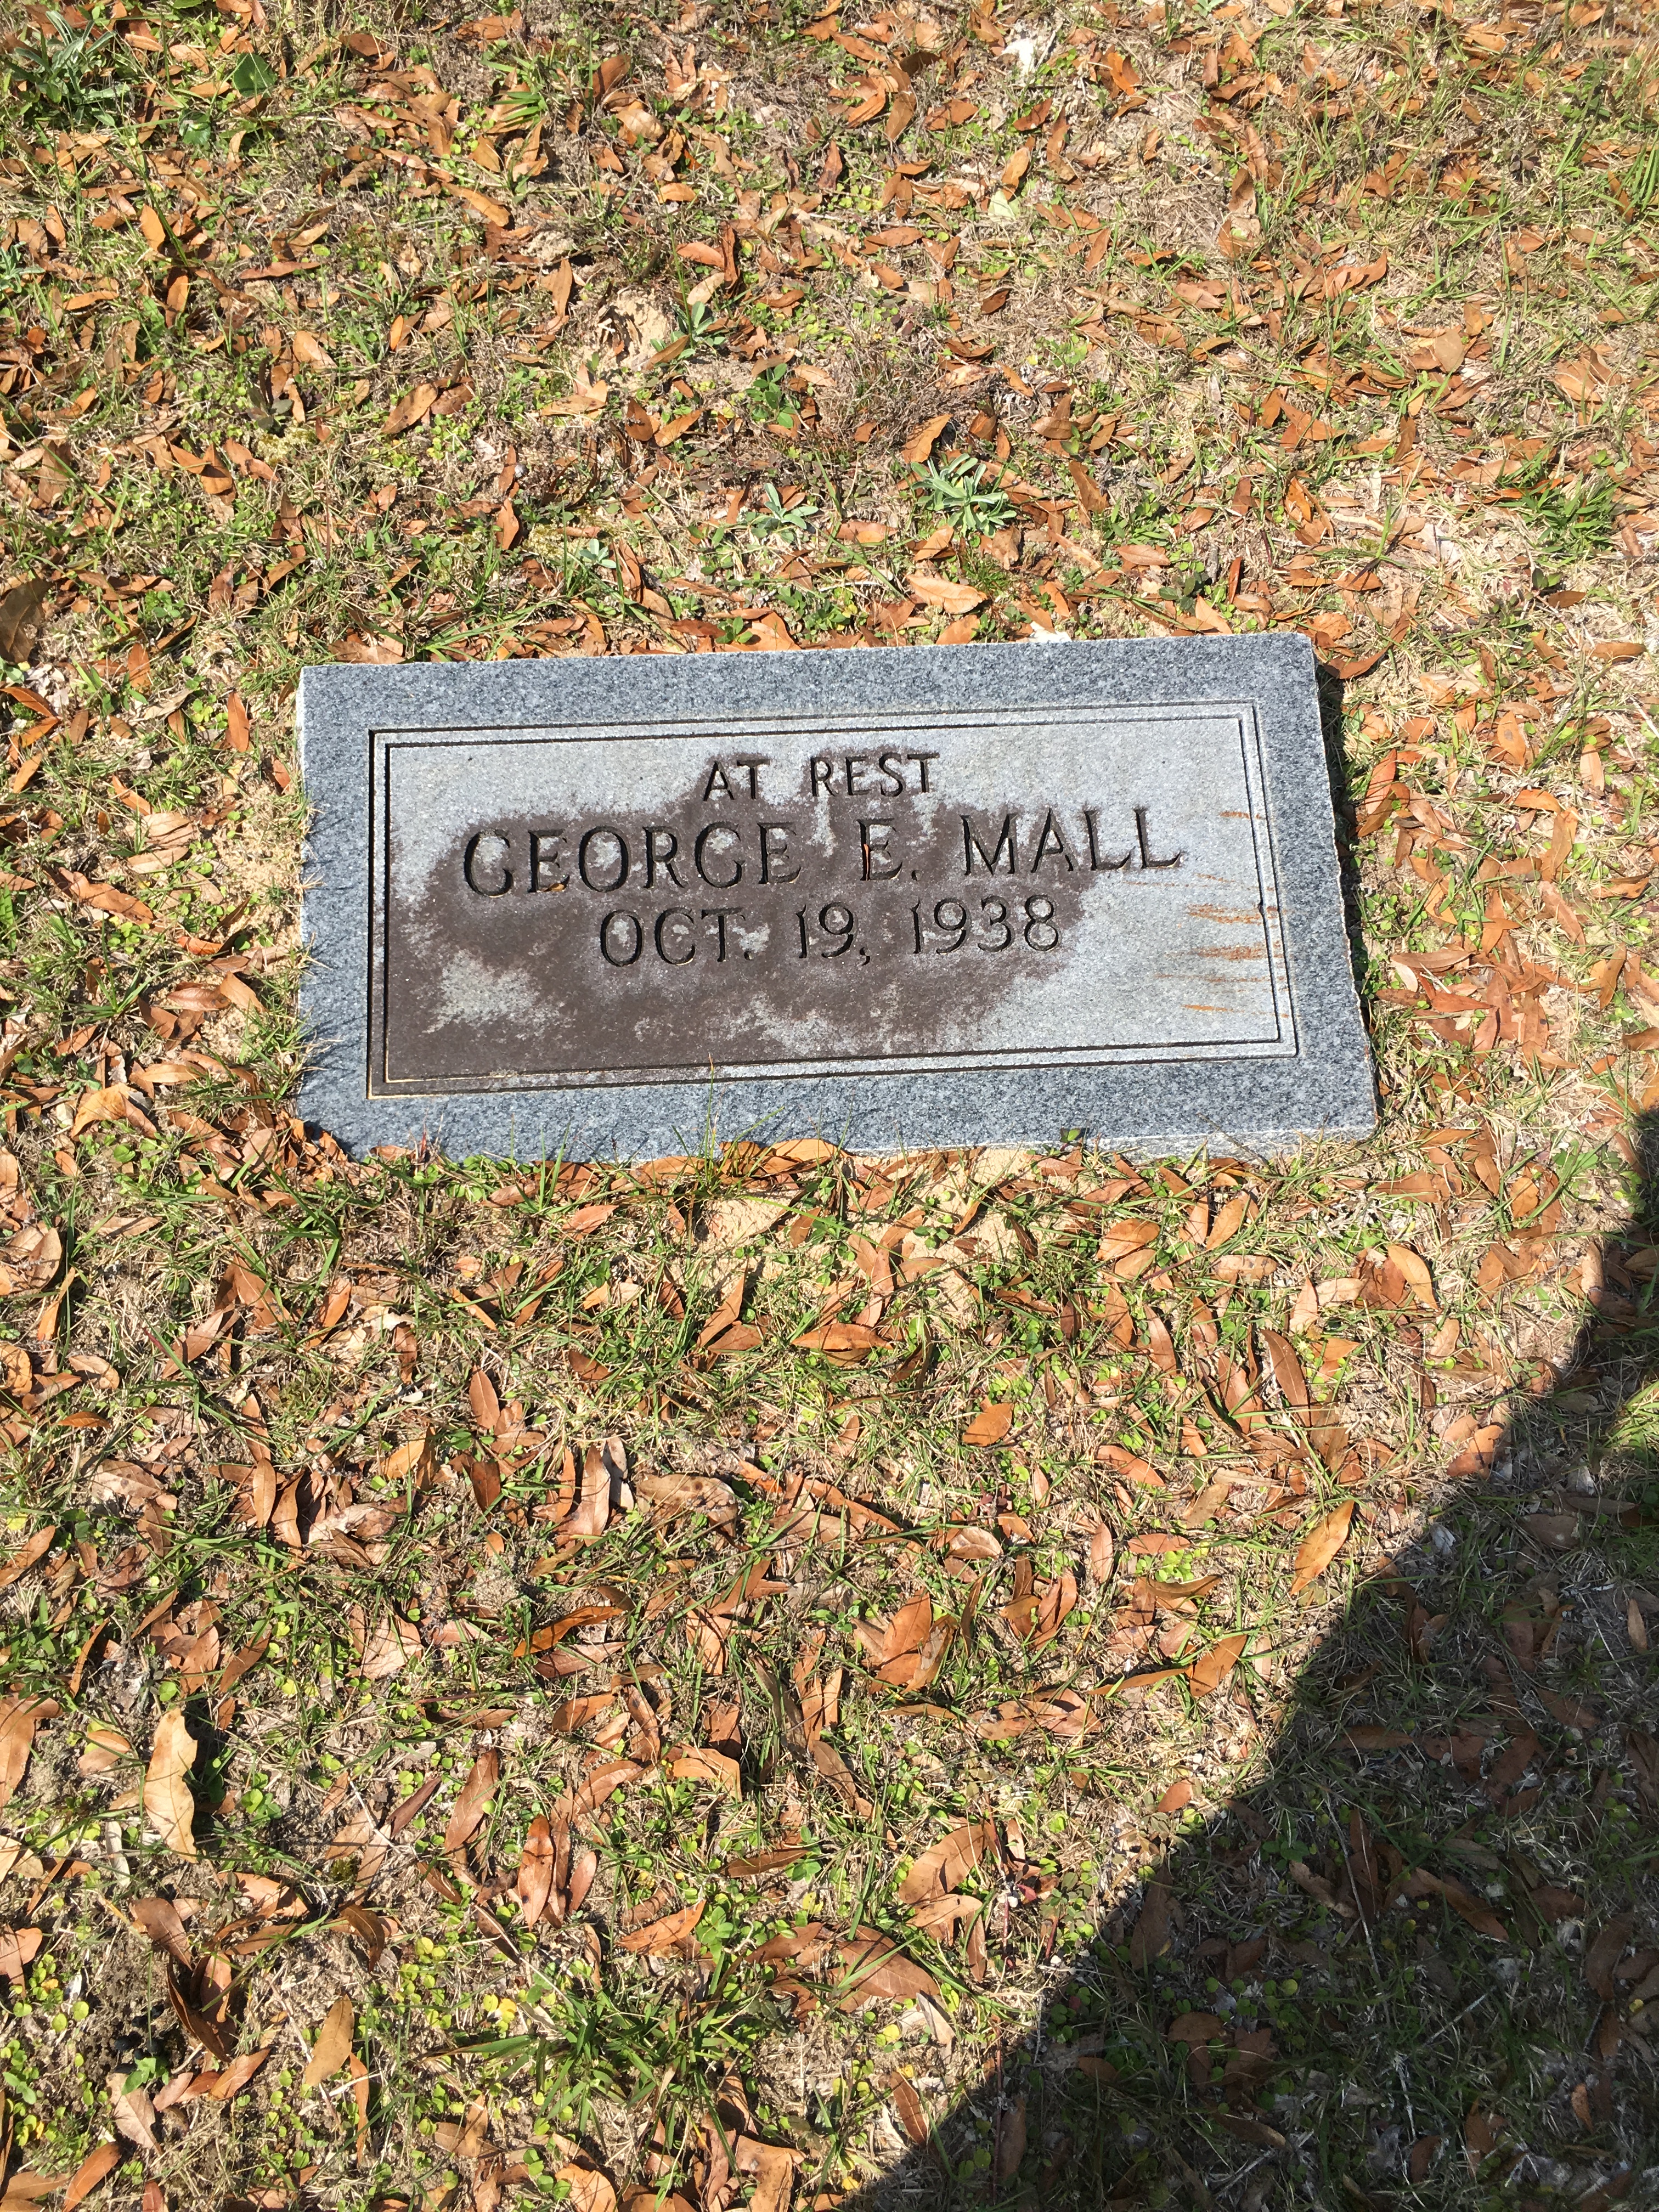 George E. Mall